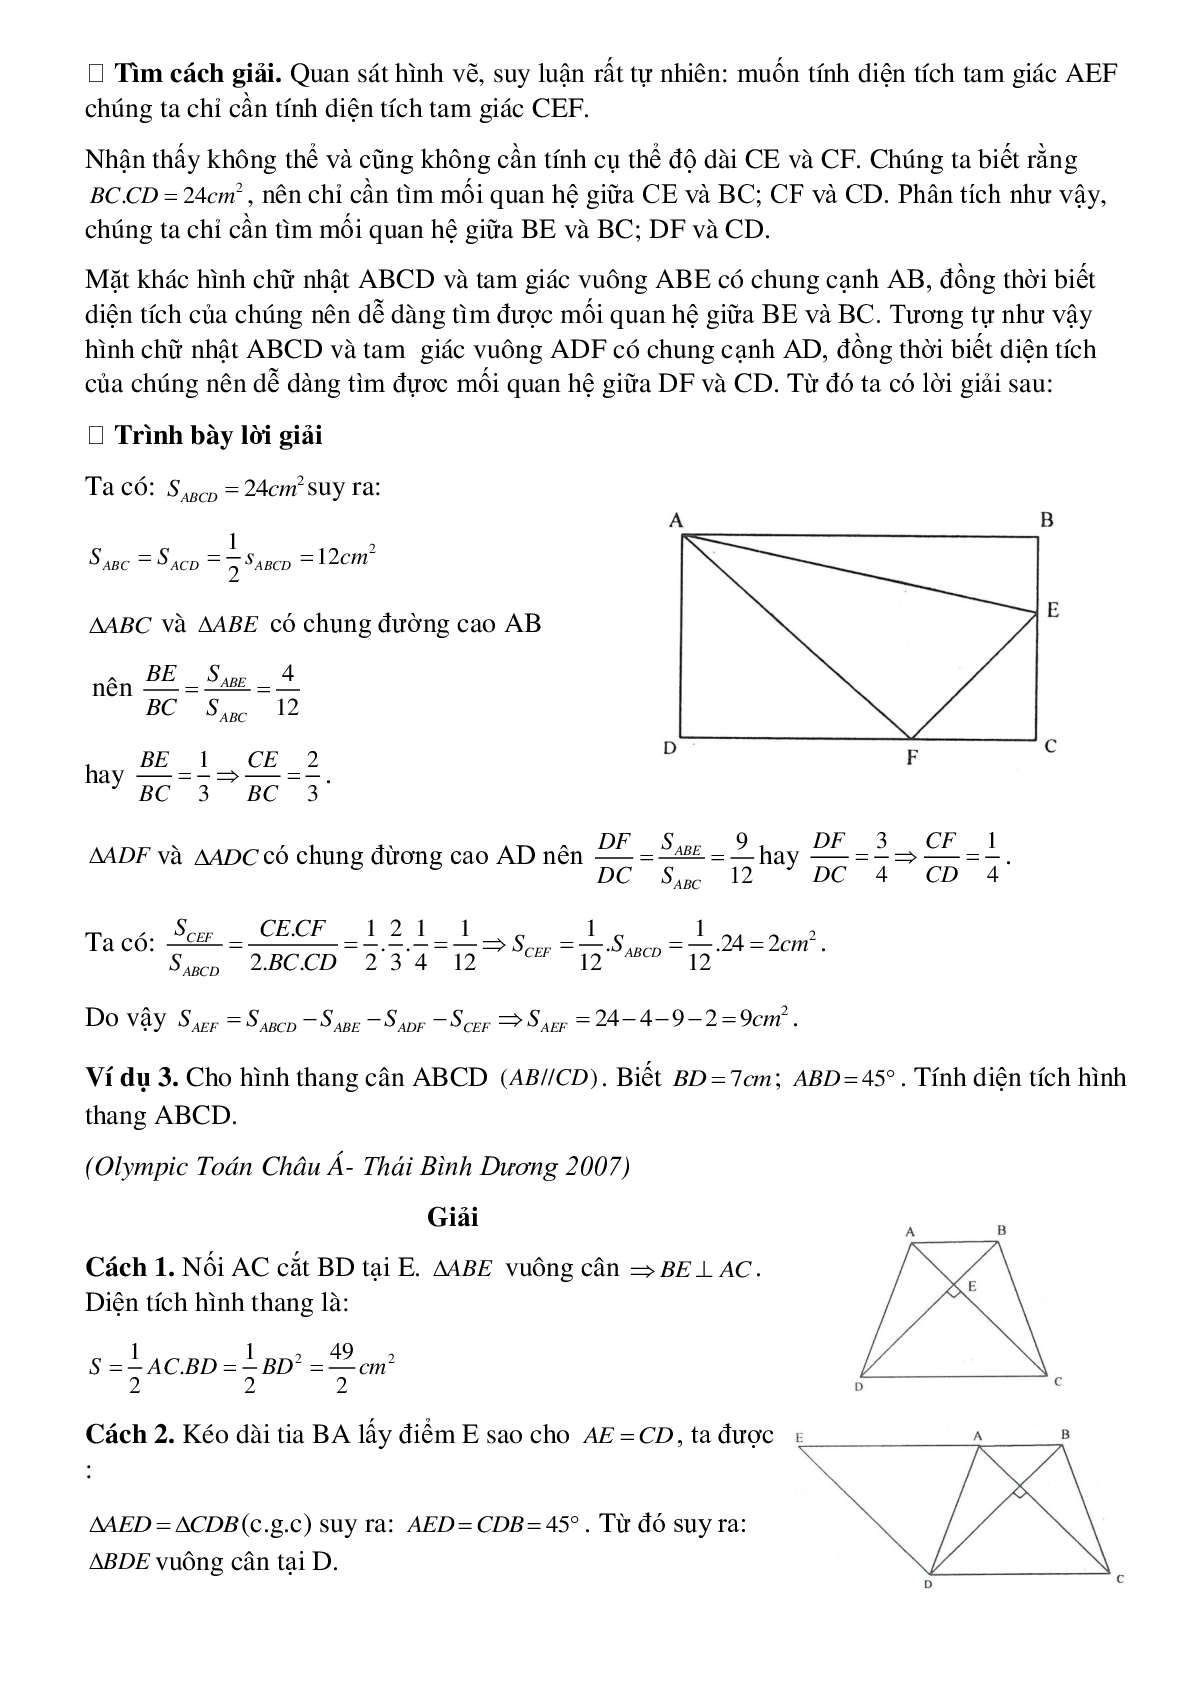 Diện tích đa giác (trang 3)